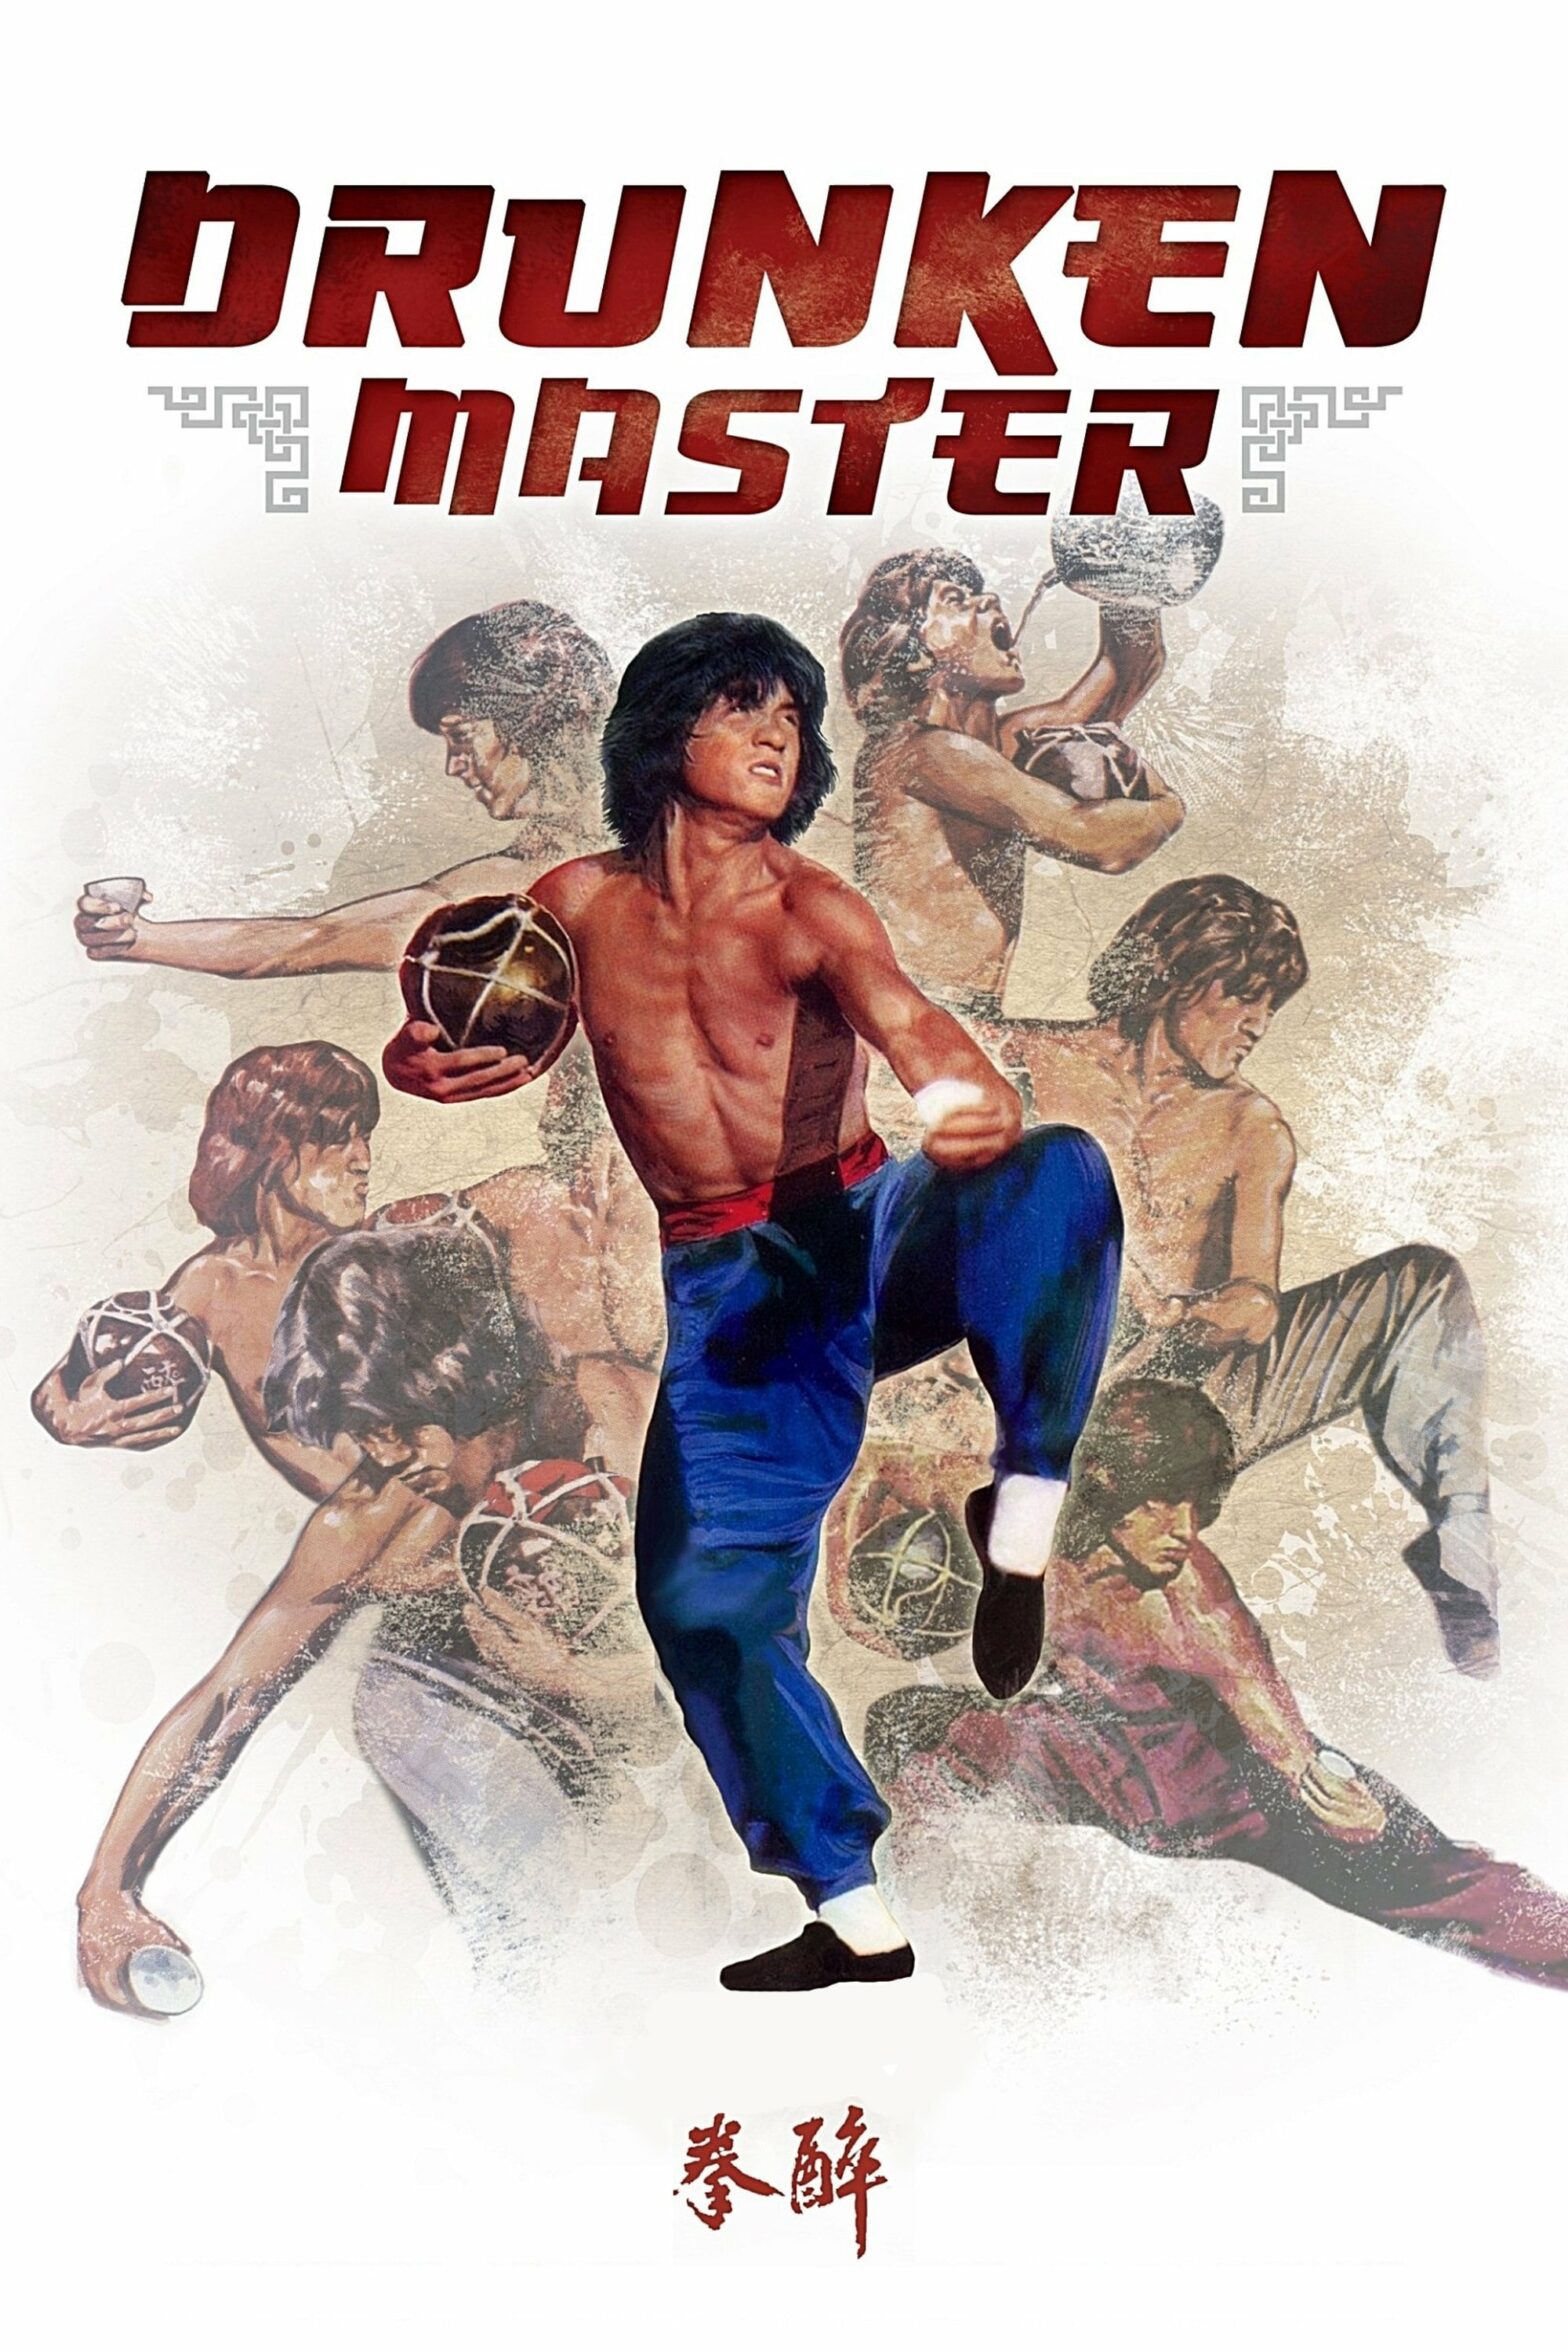 Poster for the movie "Drunken Master"